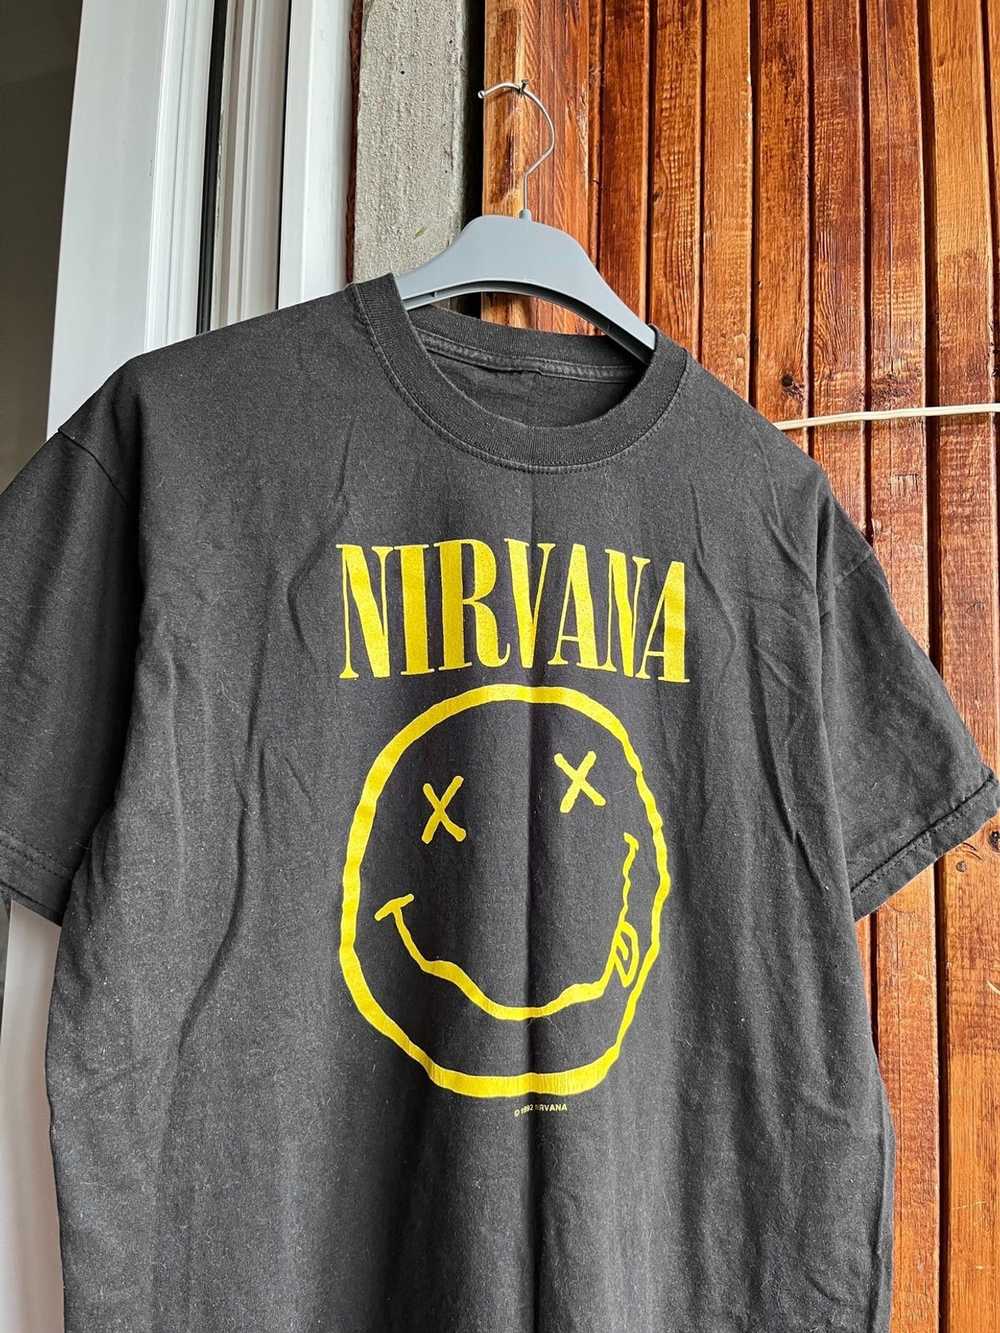 Band Tees × Nirvana × Vintage Vintage 1992 Nirvan… - image 2